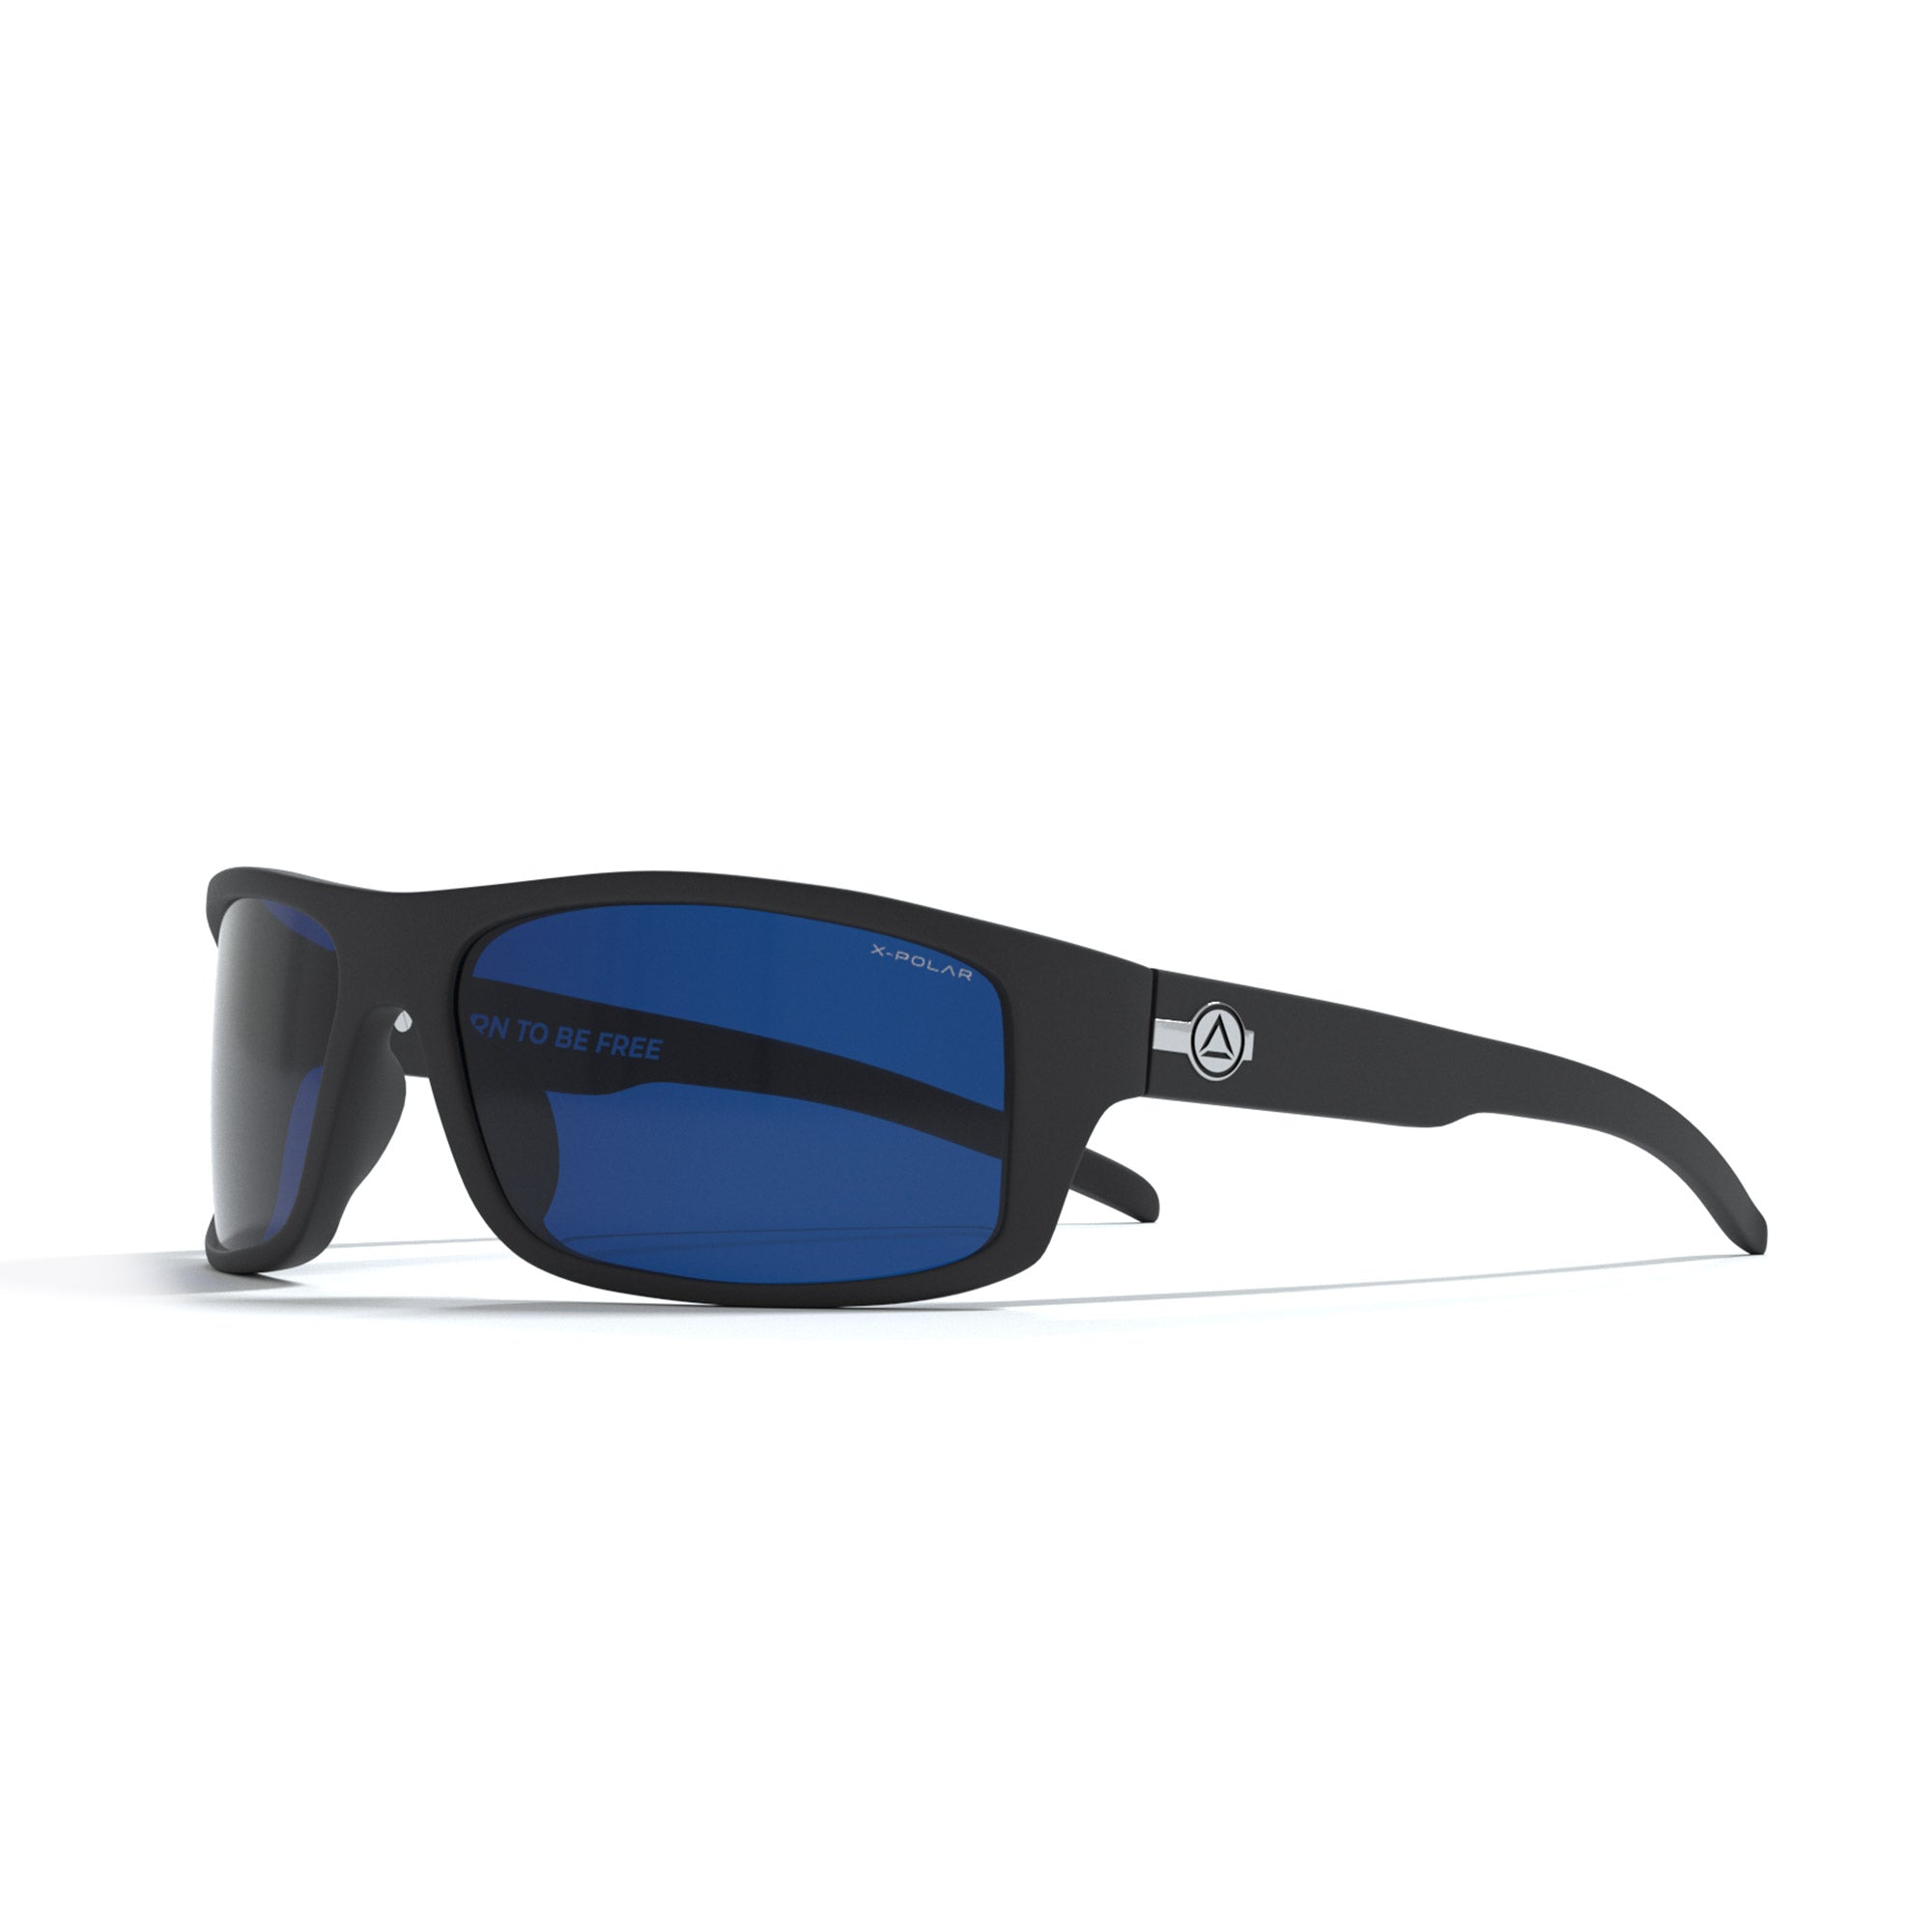 Gafas De Sol Uller Backcountry - Negro/Azul  MKP